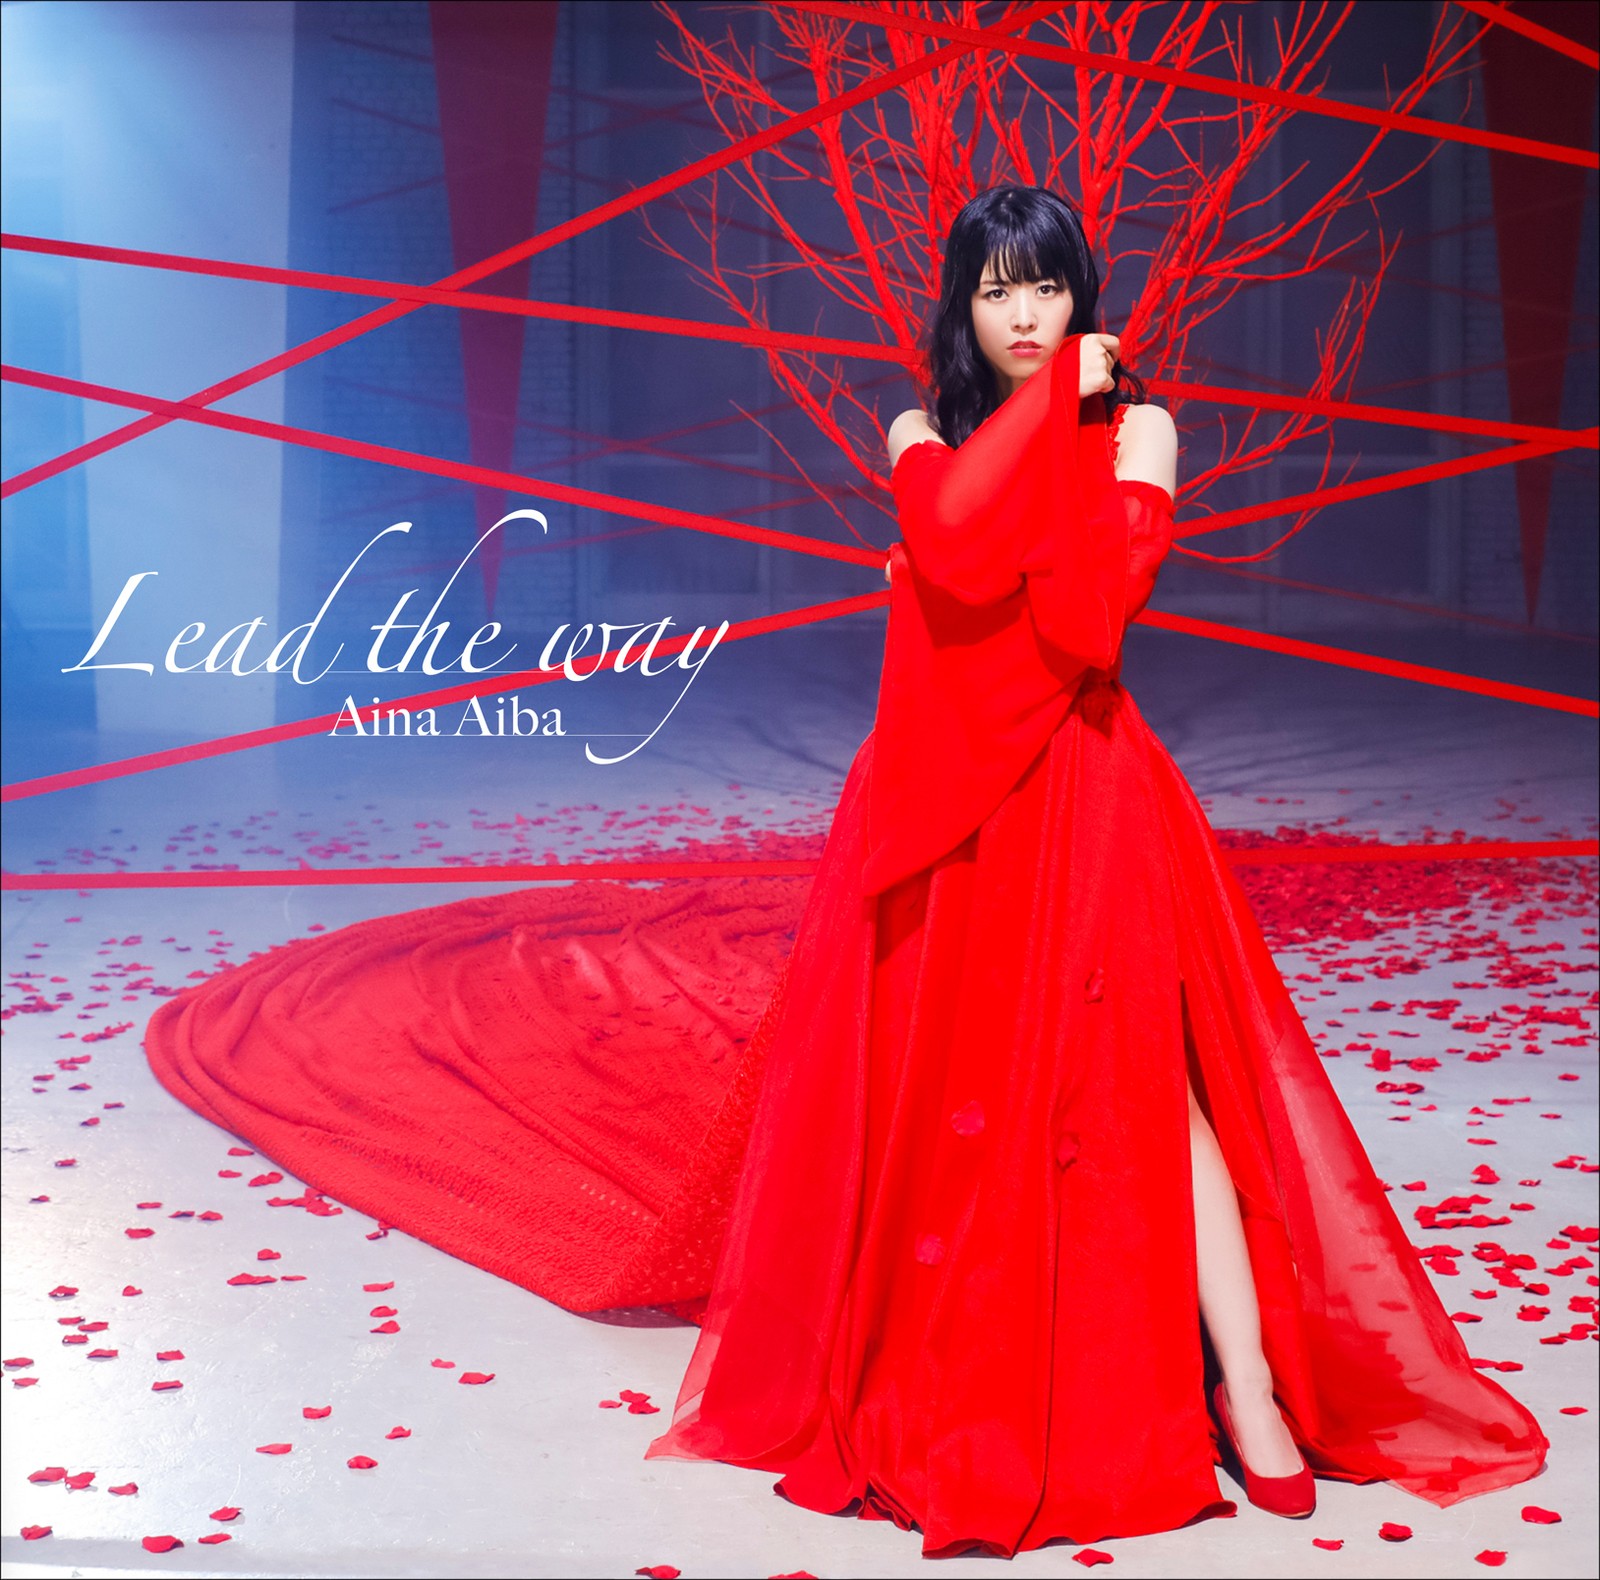 相羽あいな (Aina Aiba) - Lead the way [Mora FLAC 24bit/96kHz]